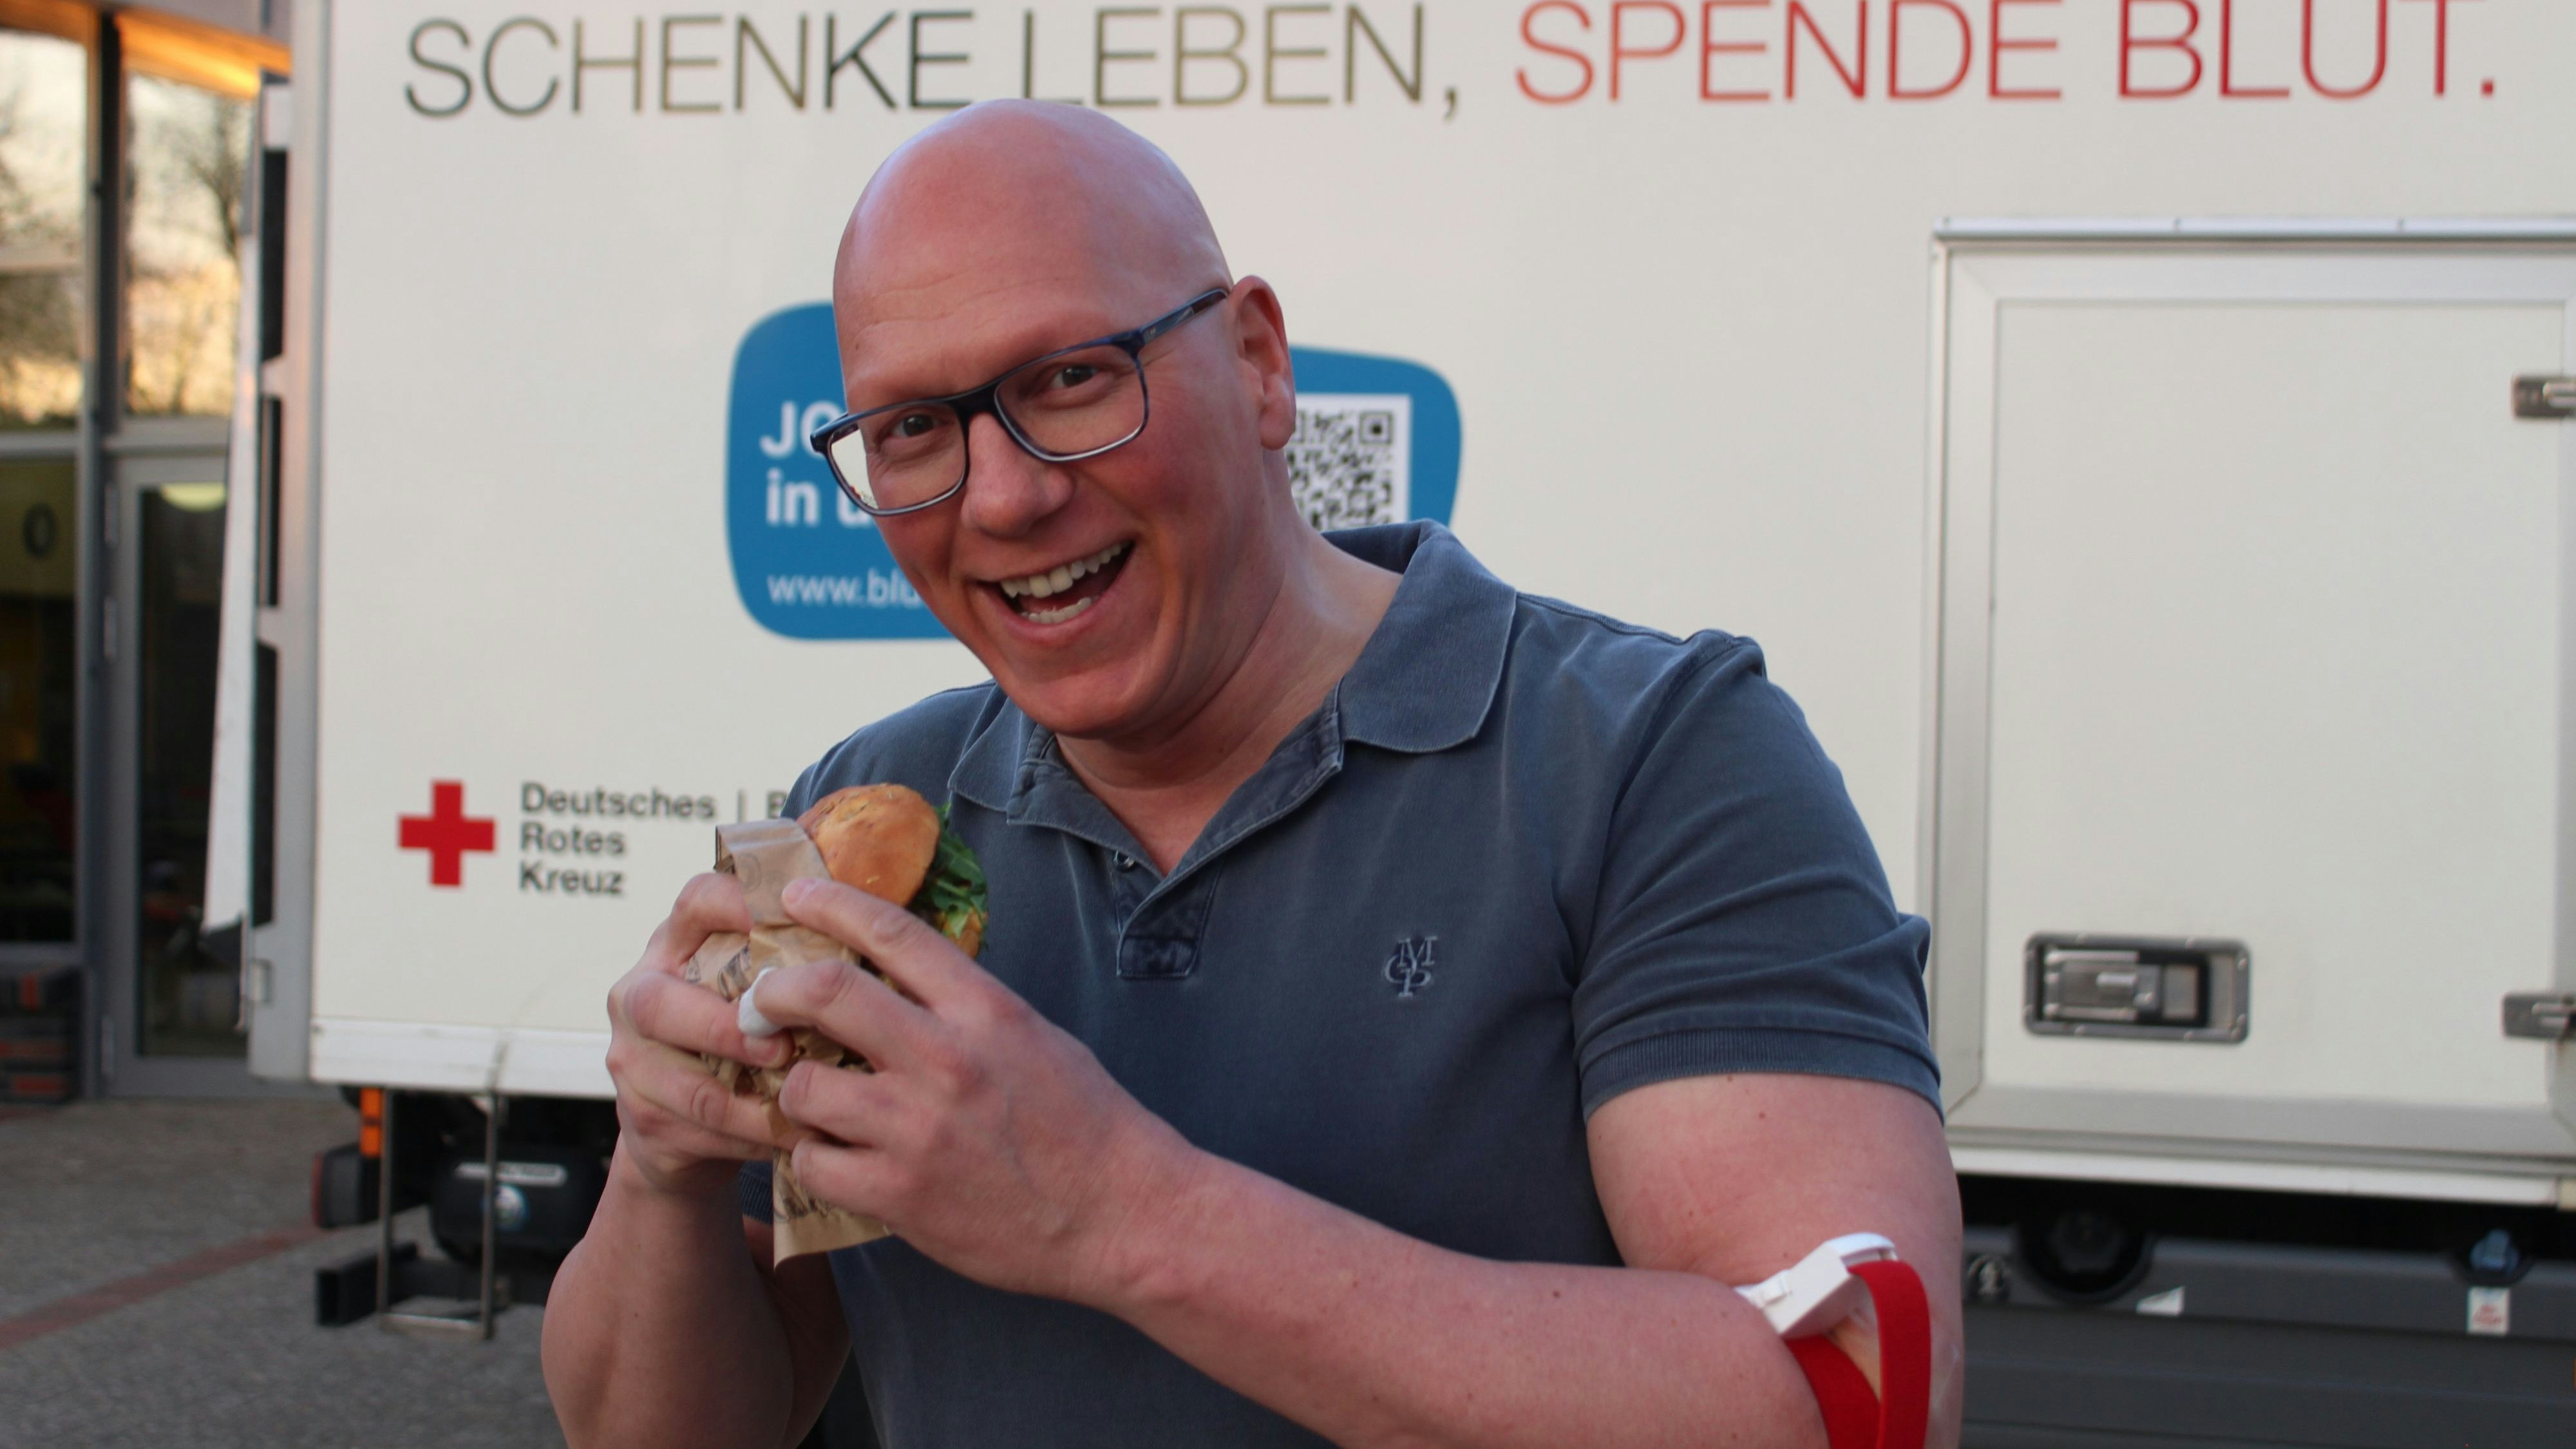 Der Burger sei eine schöne Abwechslung, aber nicht ausschlaggebend für seine Blutspende, sagt Michael Sieve. Foto: Heinzel